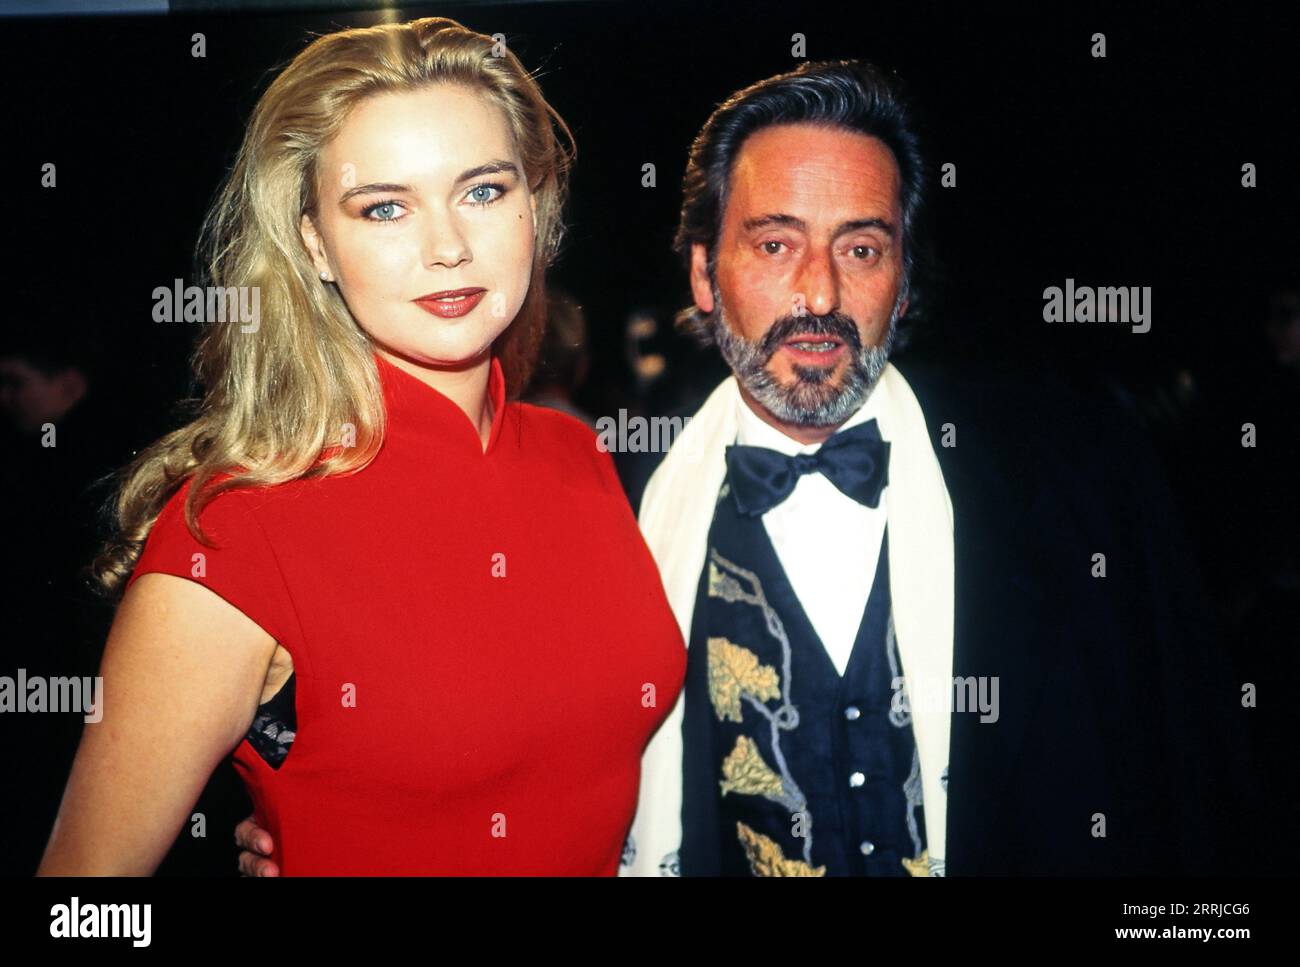 Schauspielerin Veronica Ferres mit Regisseur Helmut Dietl BEI der Filmpremiere des Dietl films : Schtonk, 1992. Banque D'Images